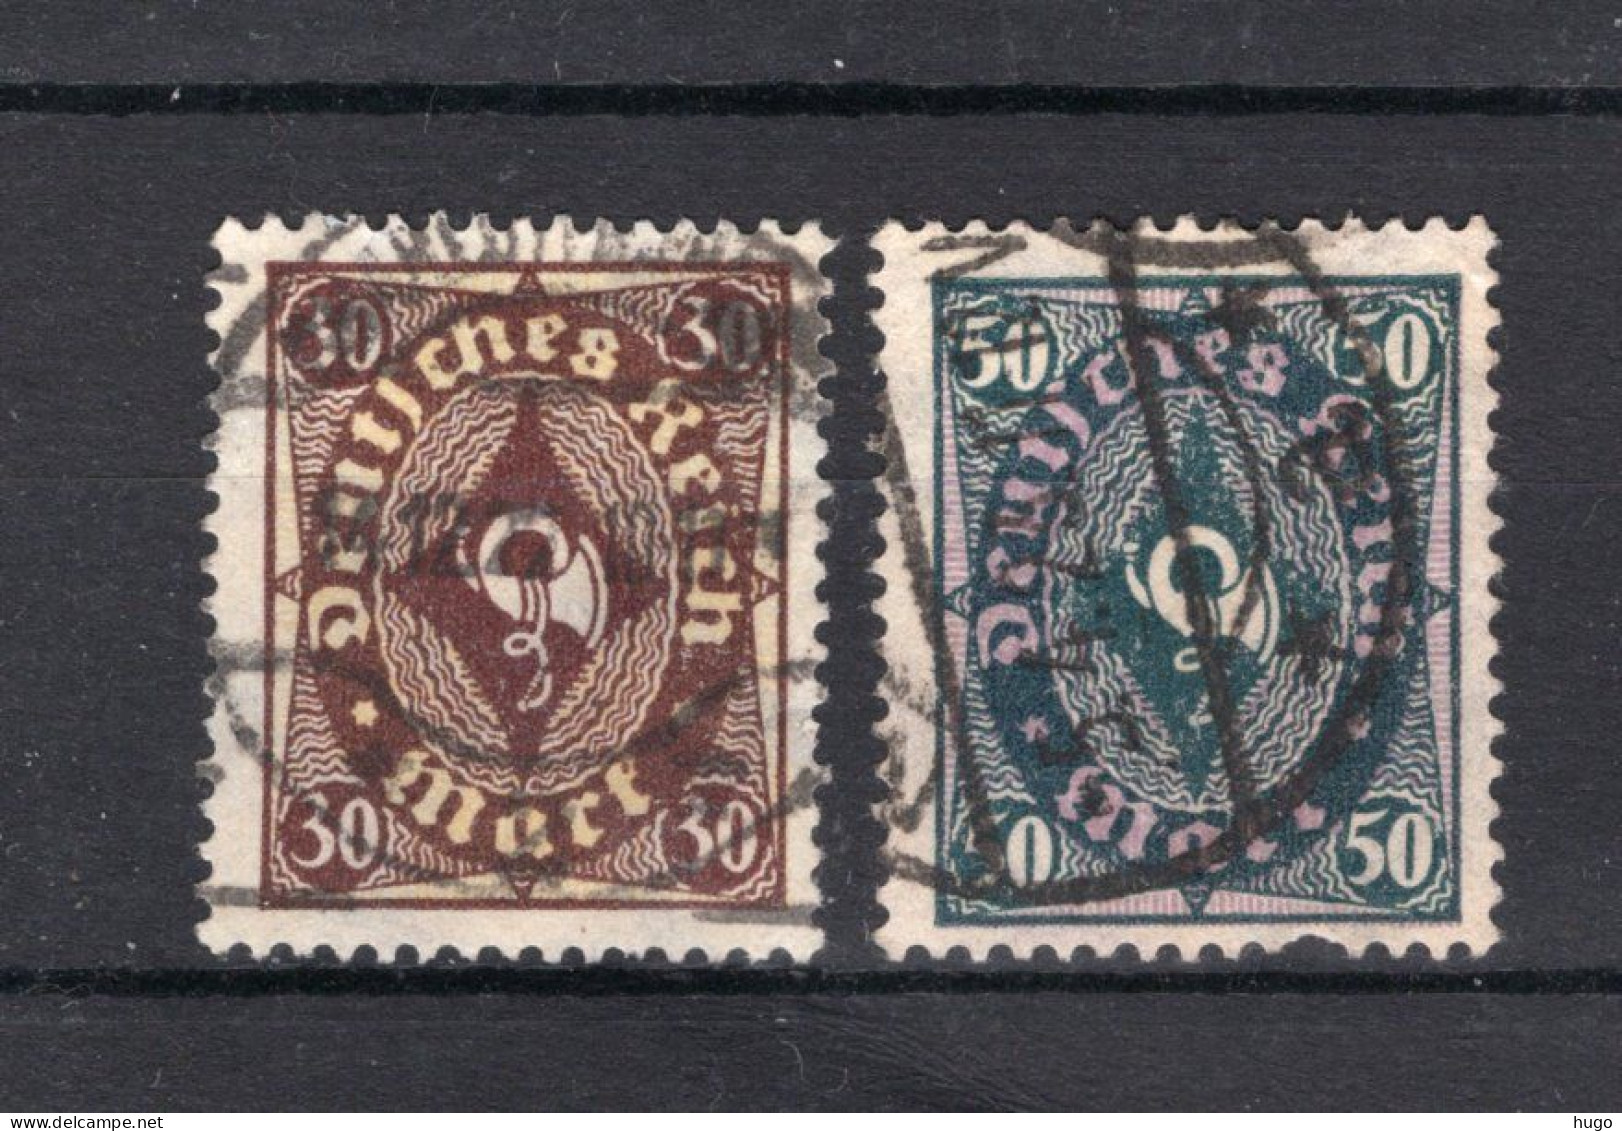 DEUTSCHES REICH Yt. 202/203° Gestempeld  - Used Stamps